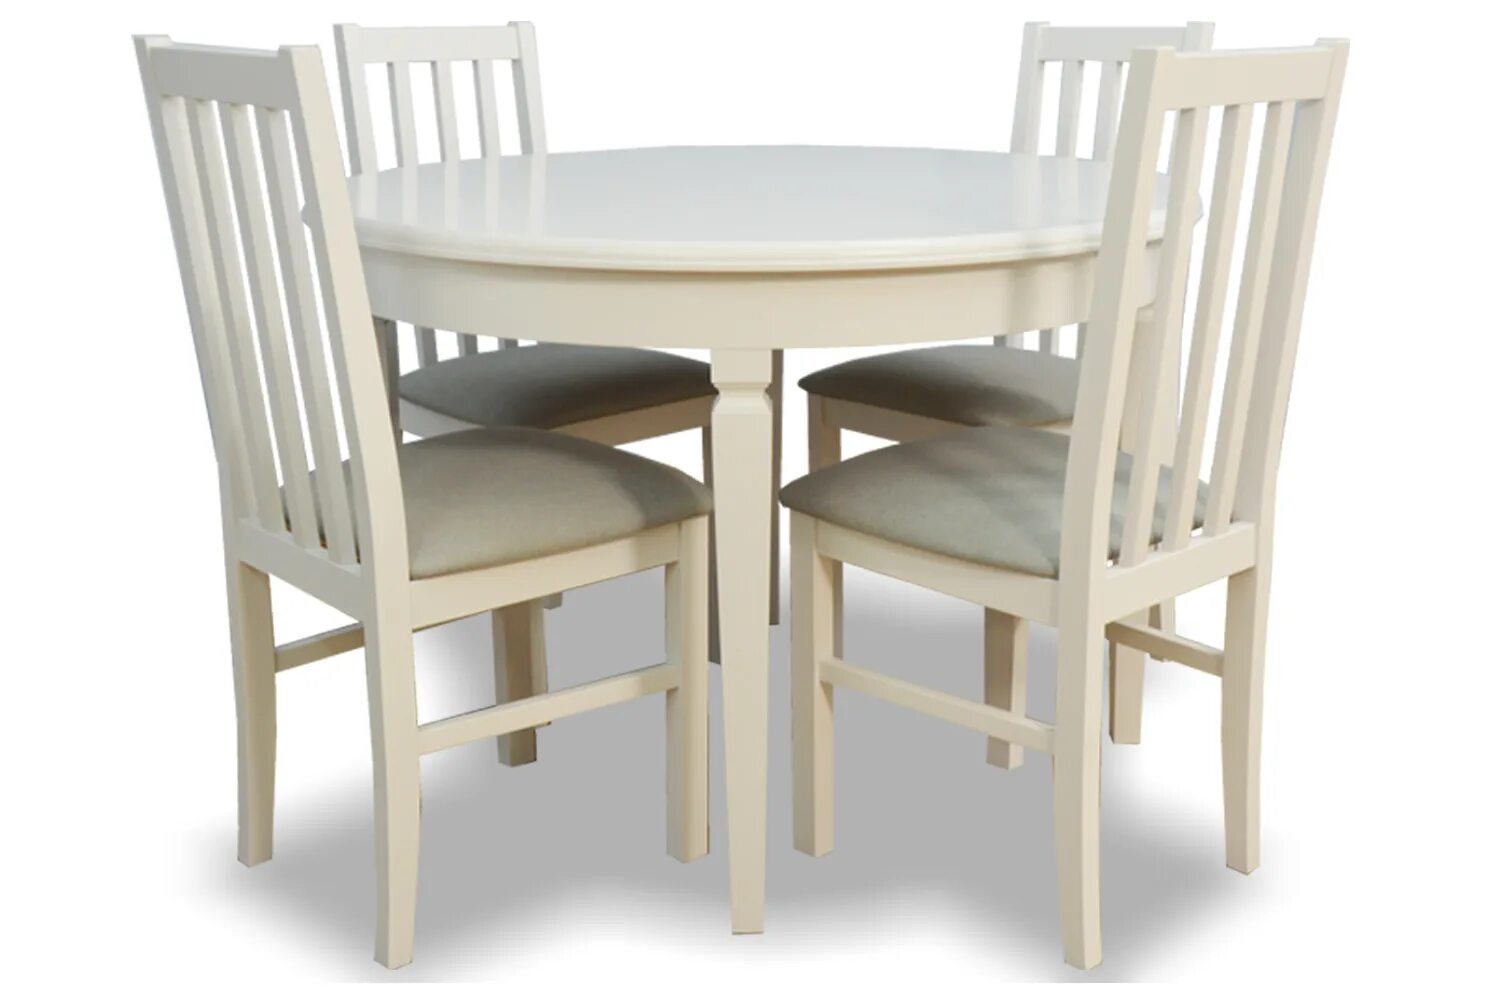 Обеденный набор Halmar Faust (стол + 4 стула). Хофф наборы стол и стулья. Обеденный комплект для кухни стол и стулья. Кухонный набор стол и стулья. Обеденный комплект стол стулья